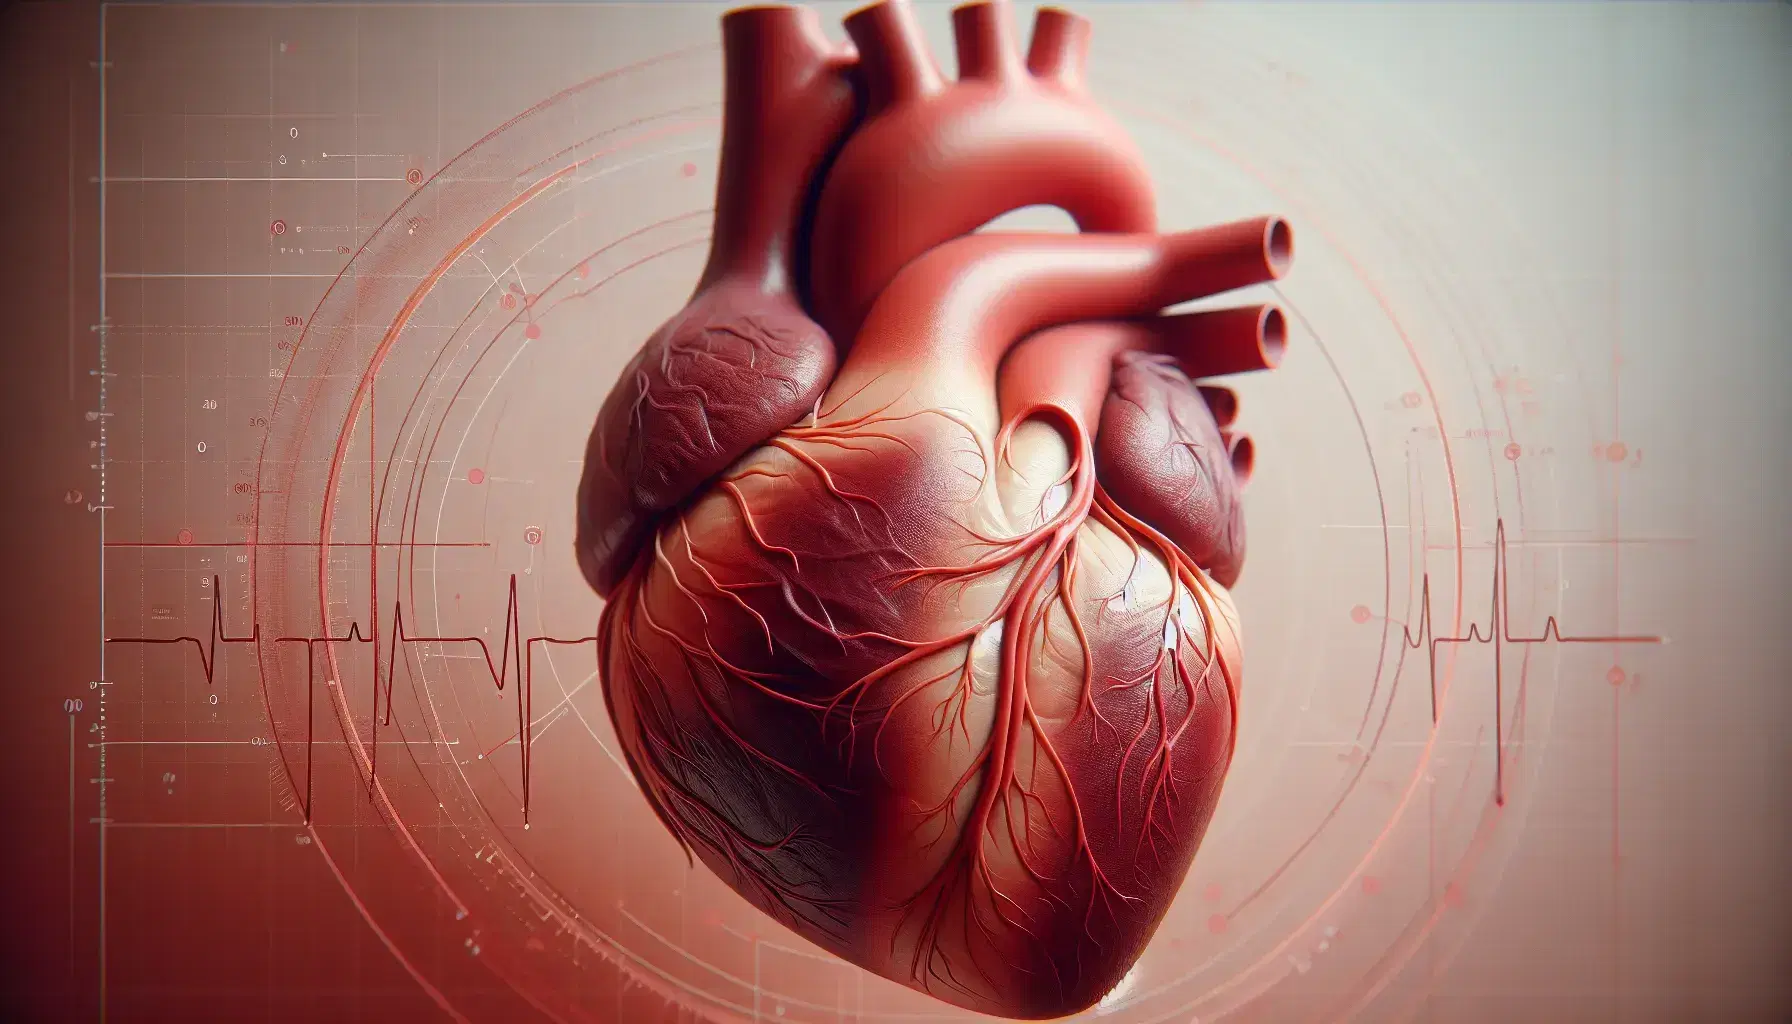 Modelo anatómico detallado de un corazón humano realista con tonalidades rojas, mostrando ventrículos, arterias y sistema de conducción cardíaco en fondo neutro.